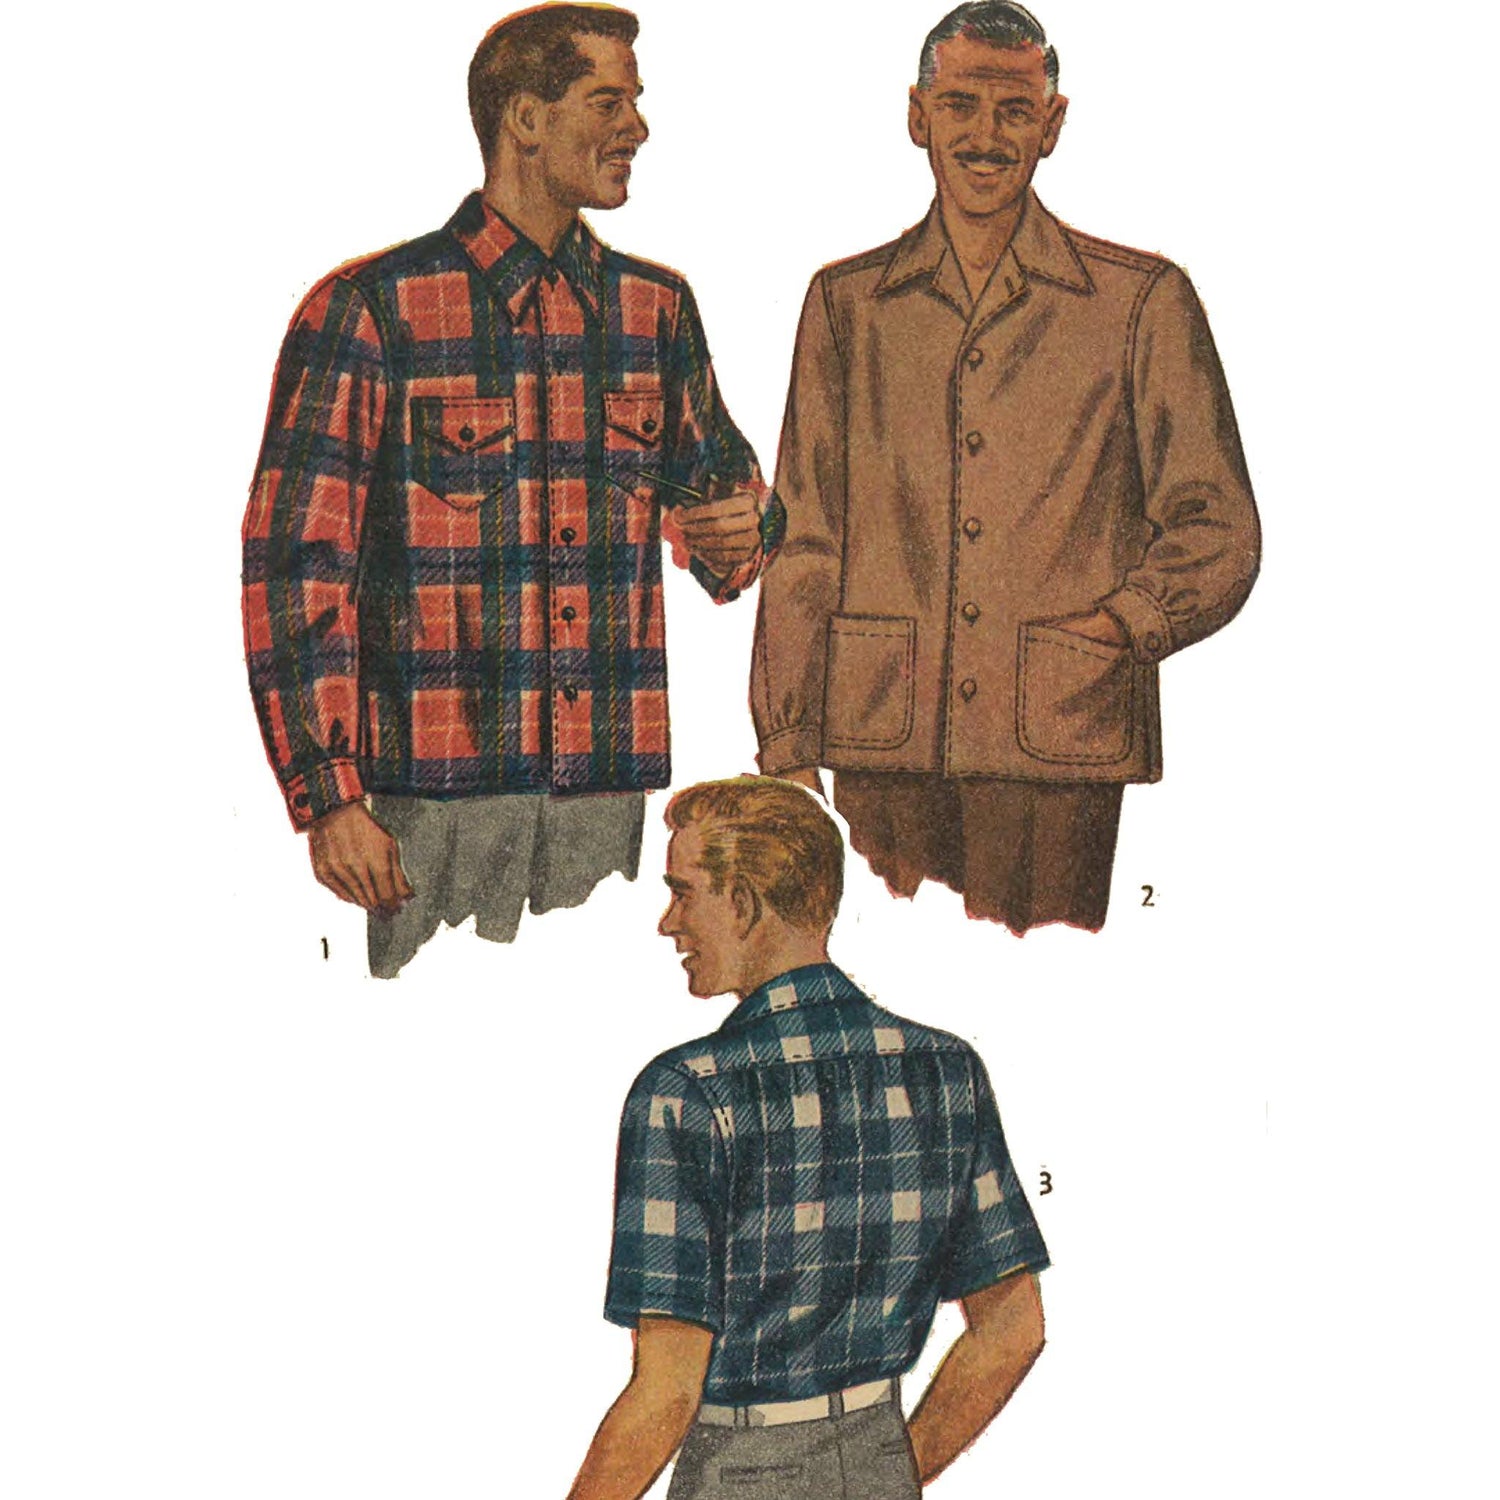 Men wearing double yoke shirt